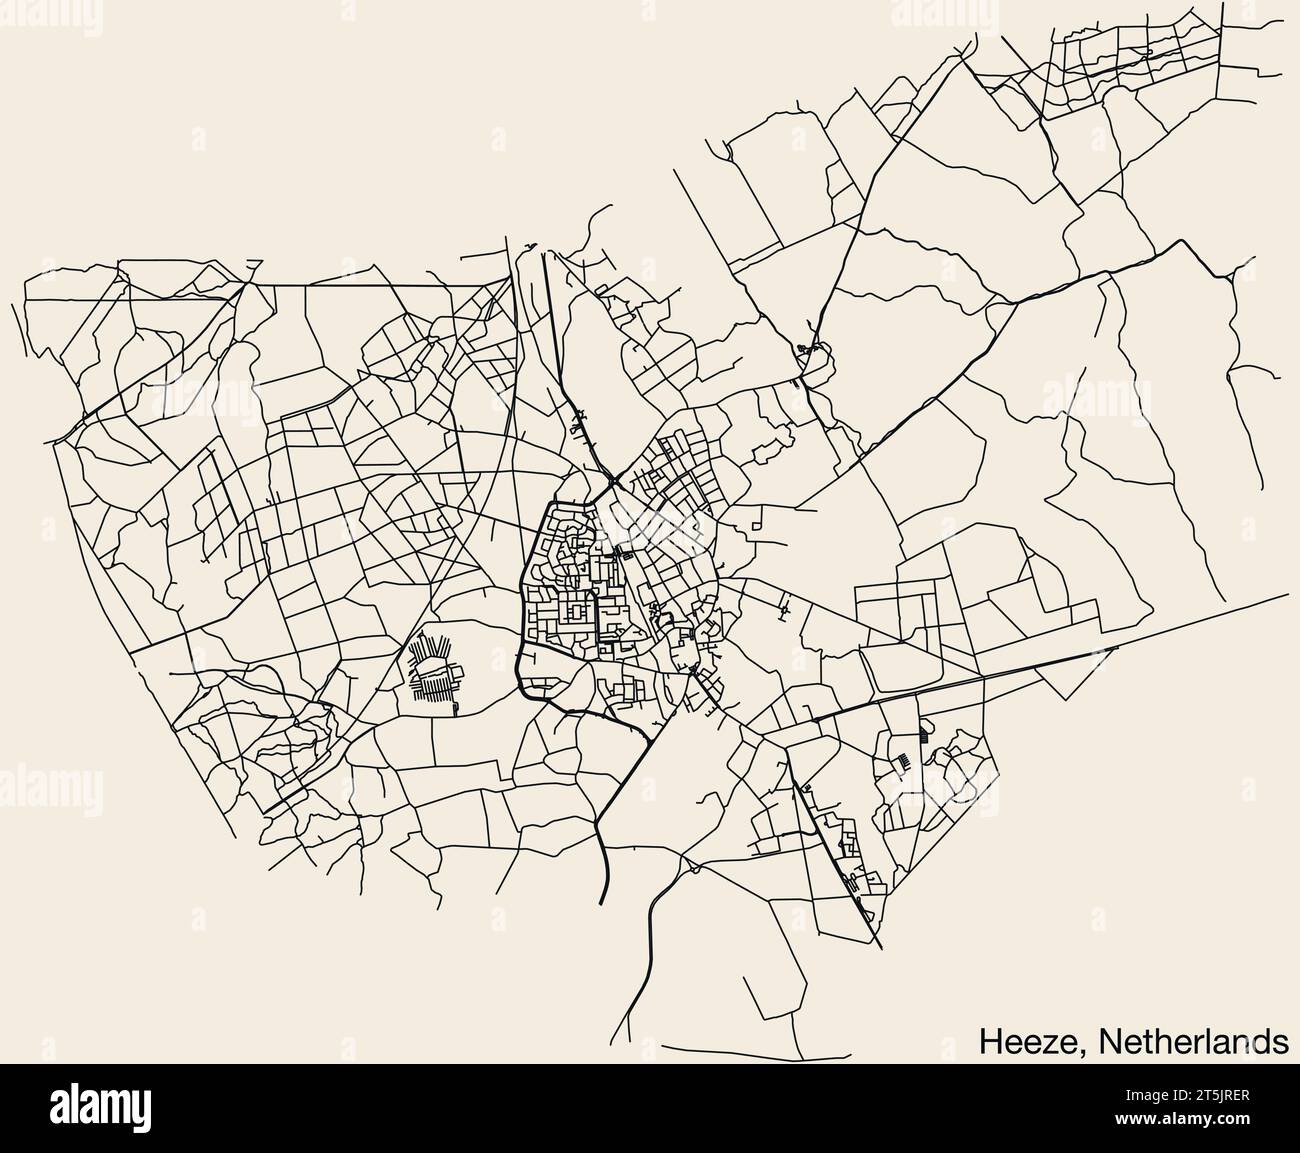 Street roads map of HEEZE, NETHERLANDS Stock Vector